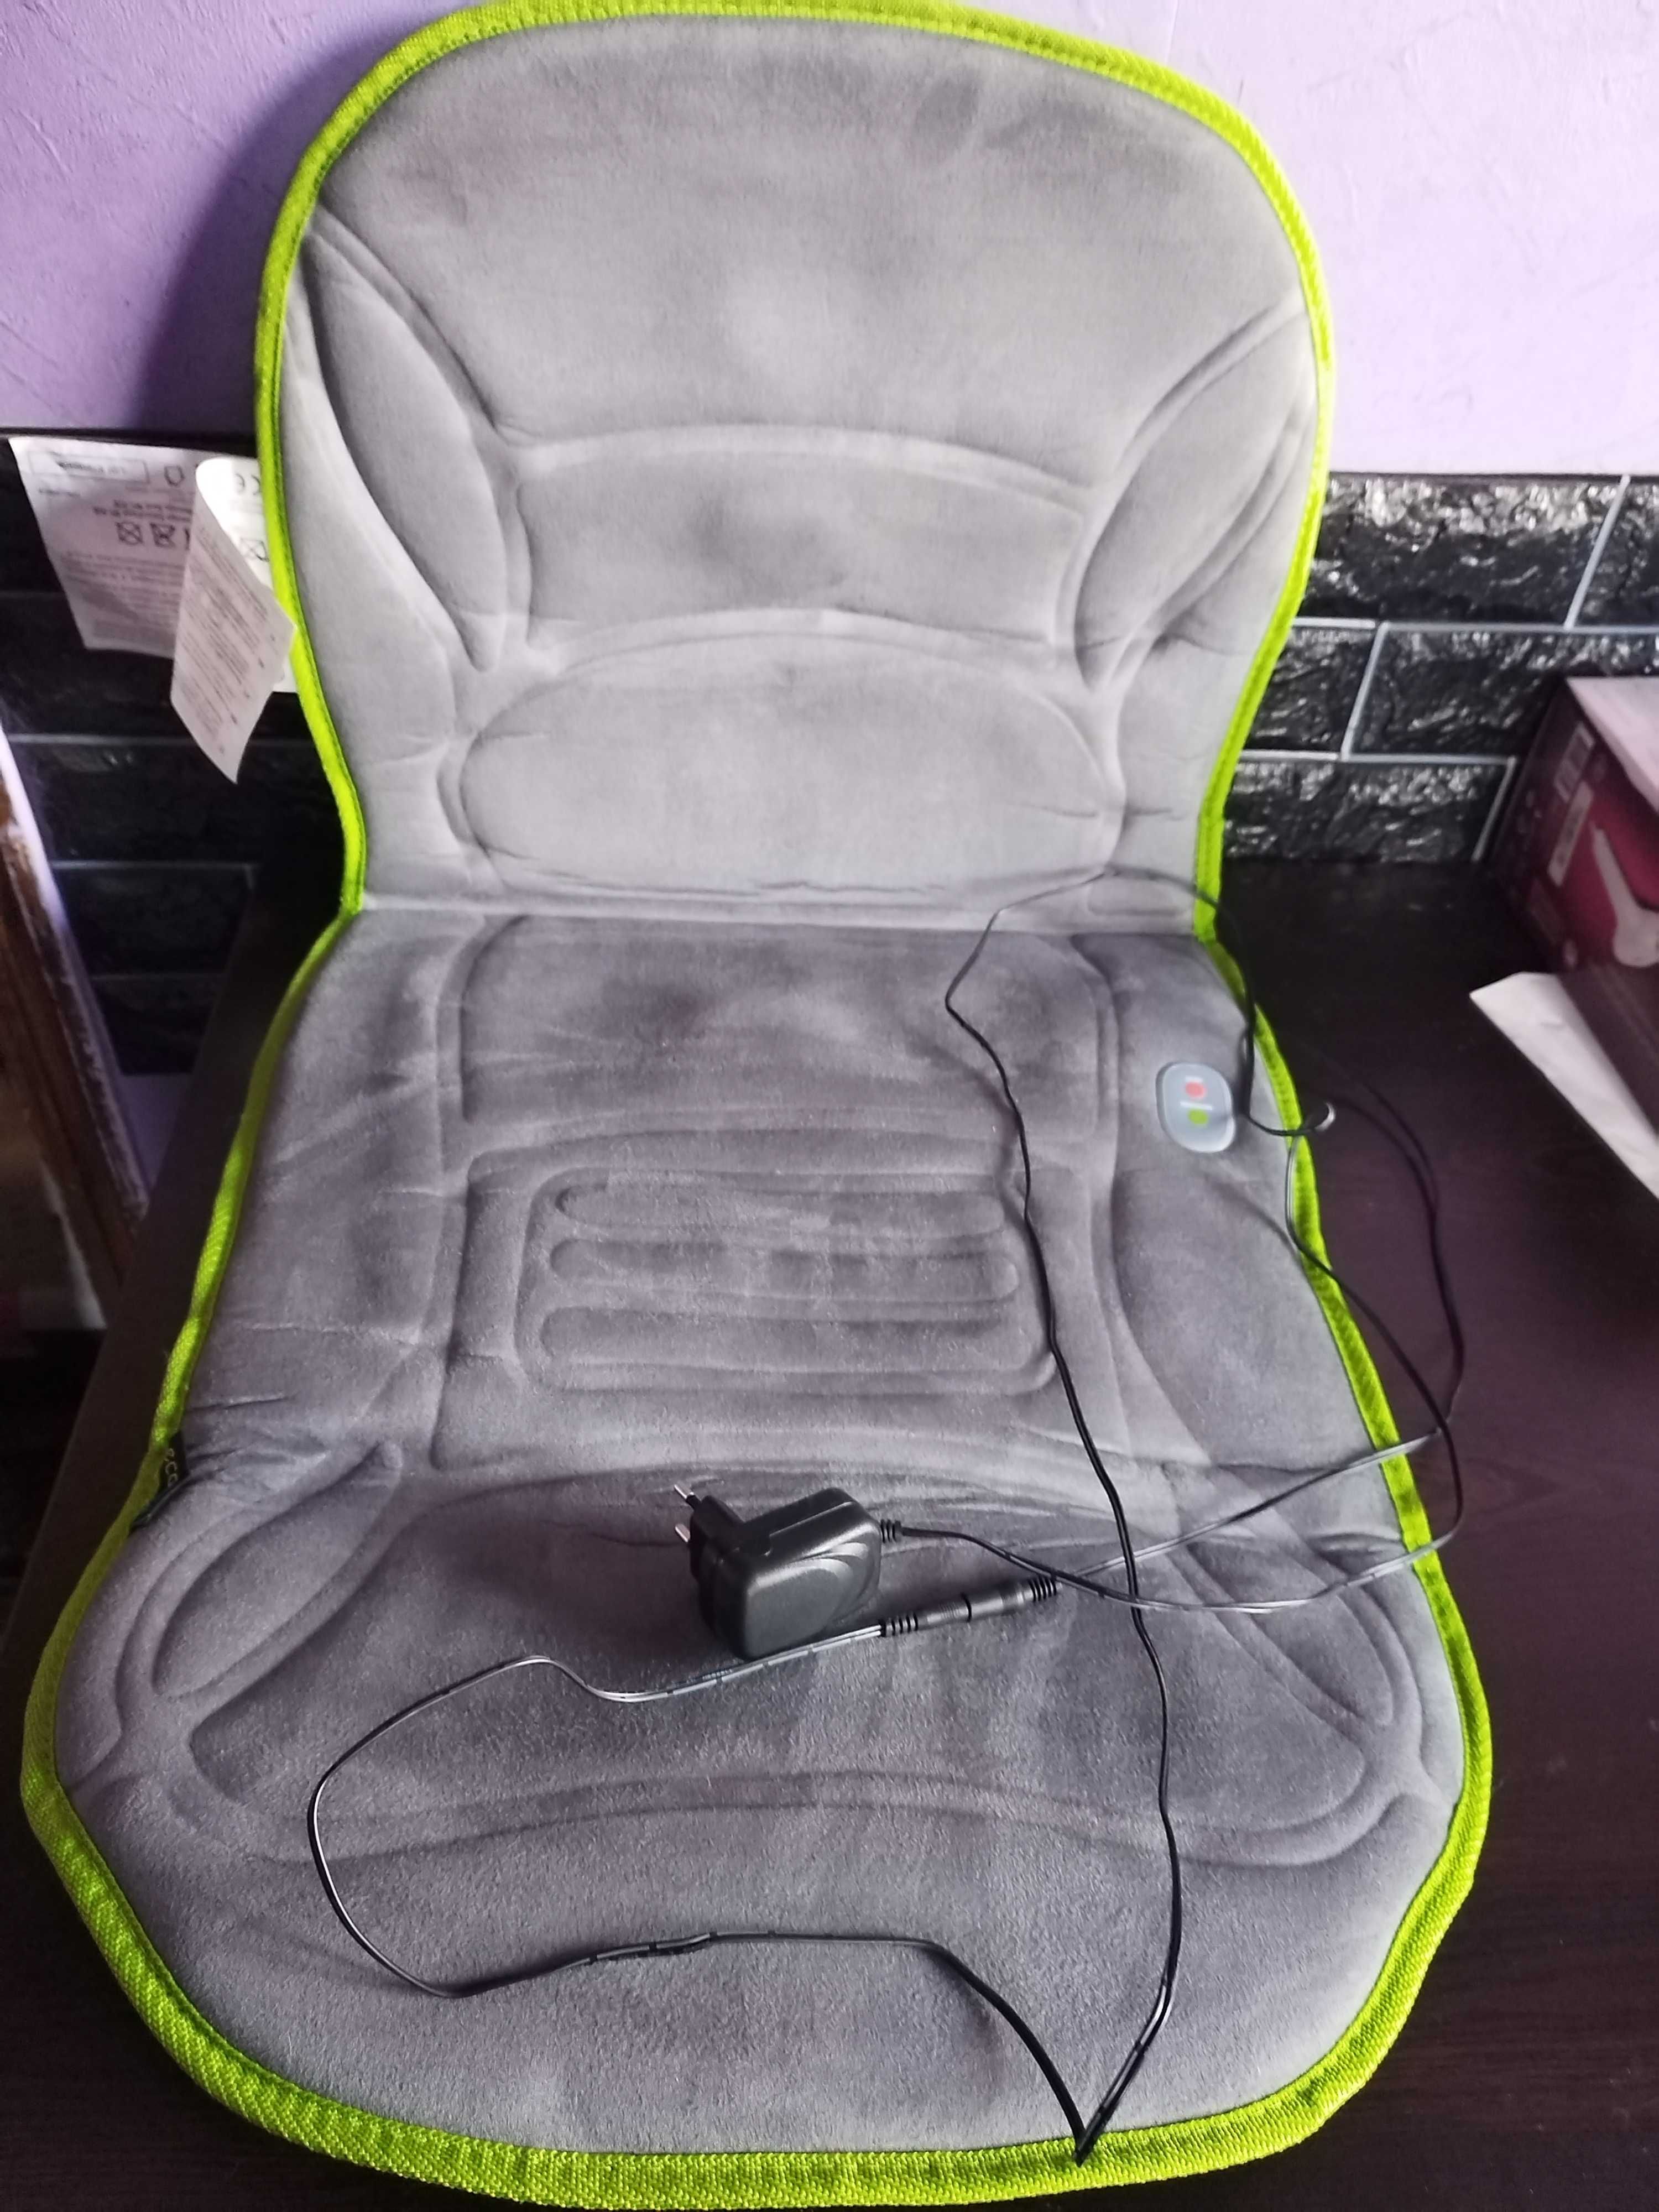 Намалена - Масажираща седалка Ecomed MC-85E, 2в1 масаж и загряване